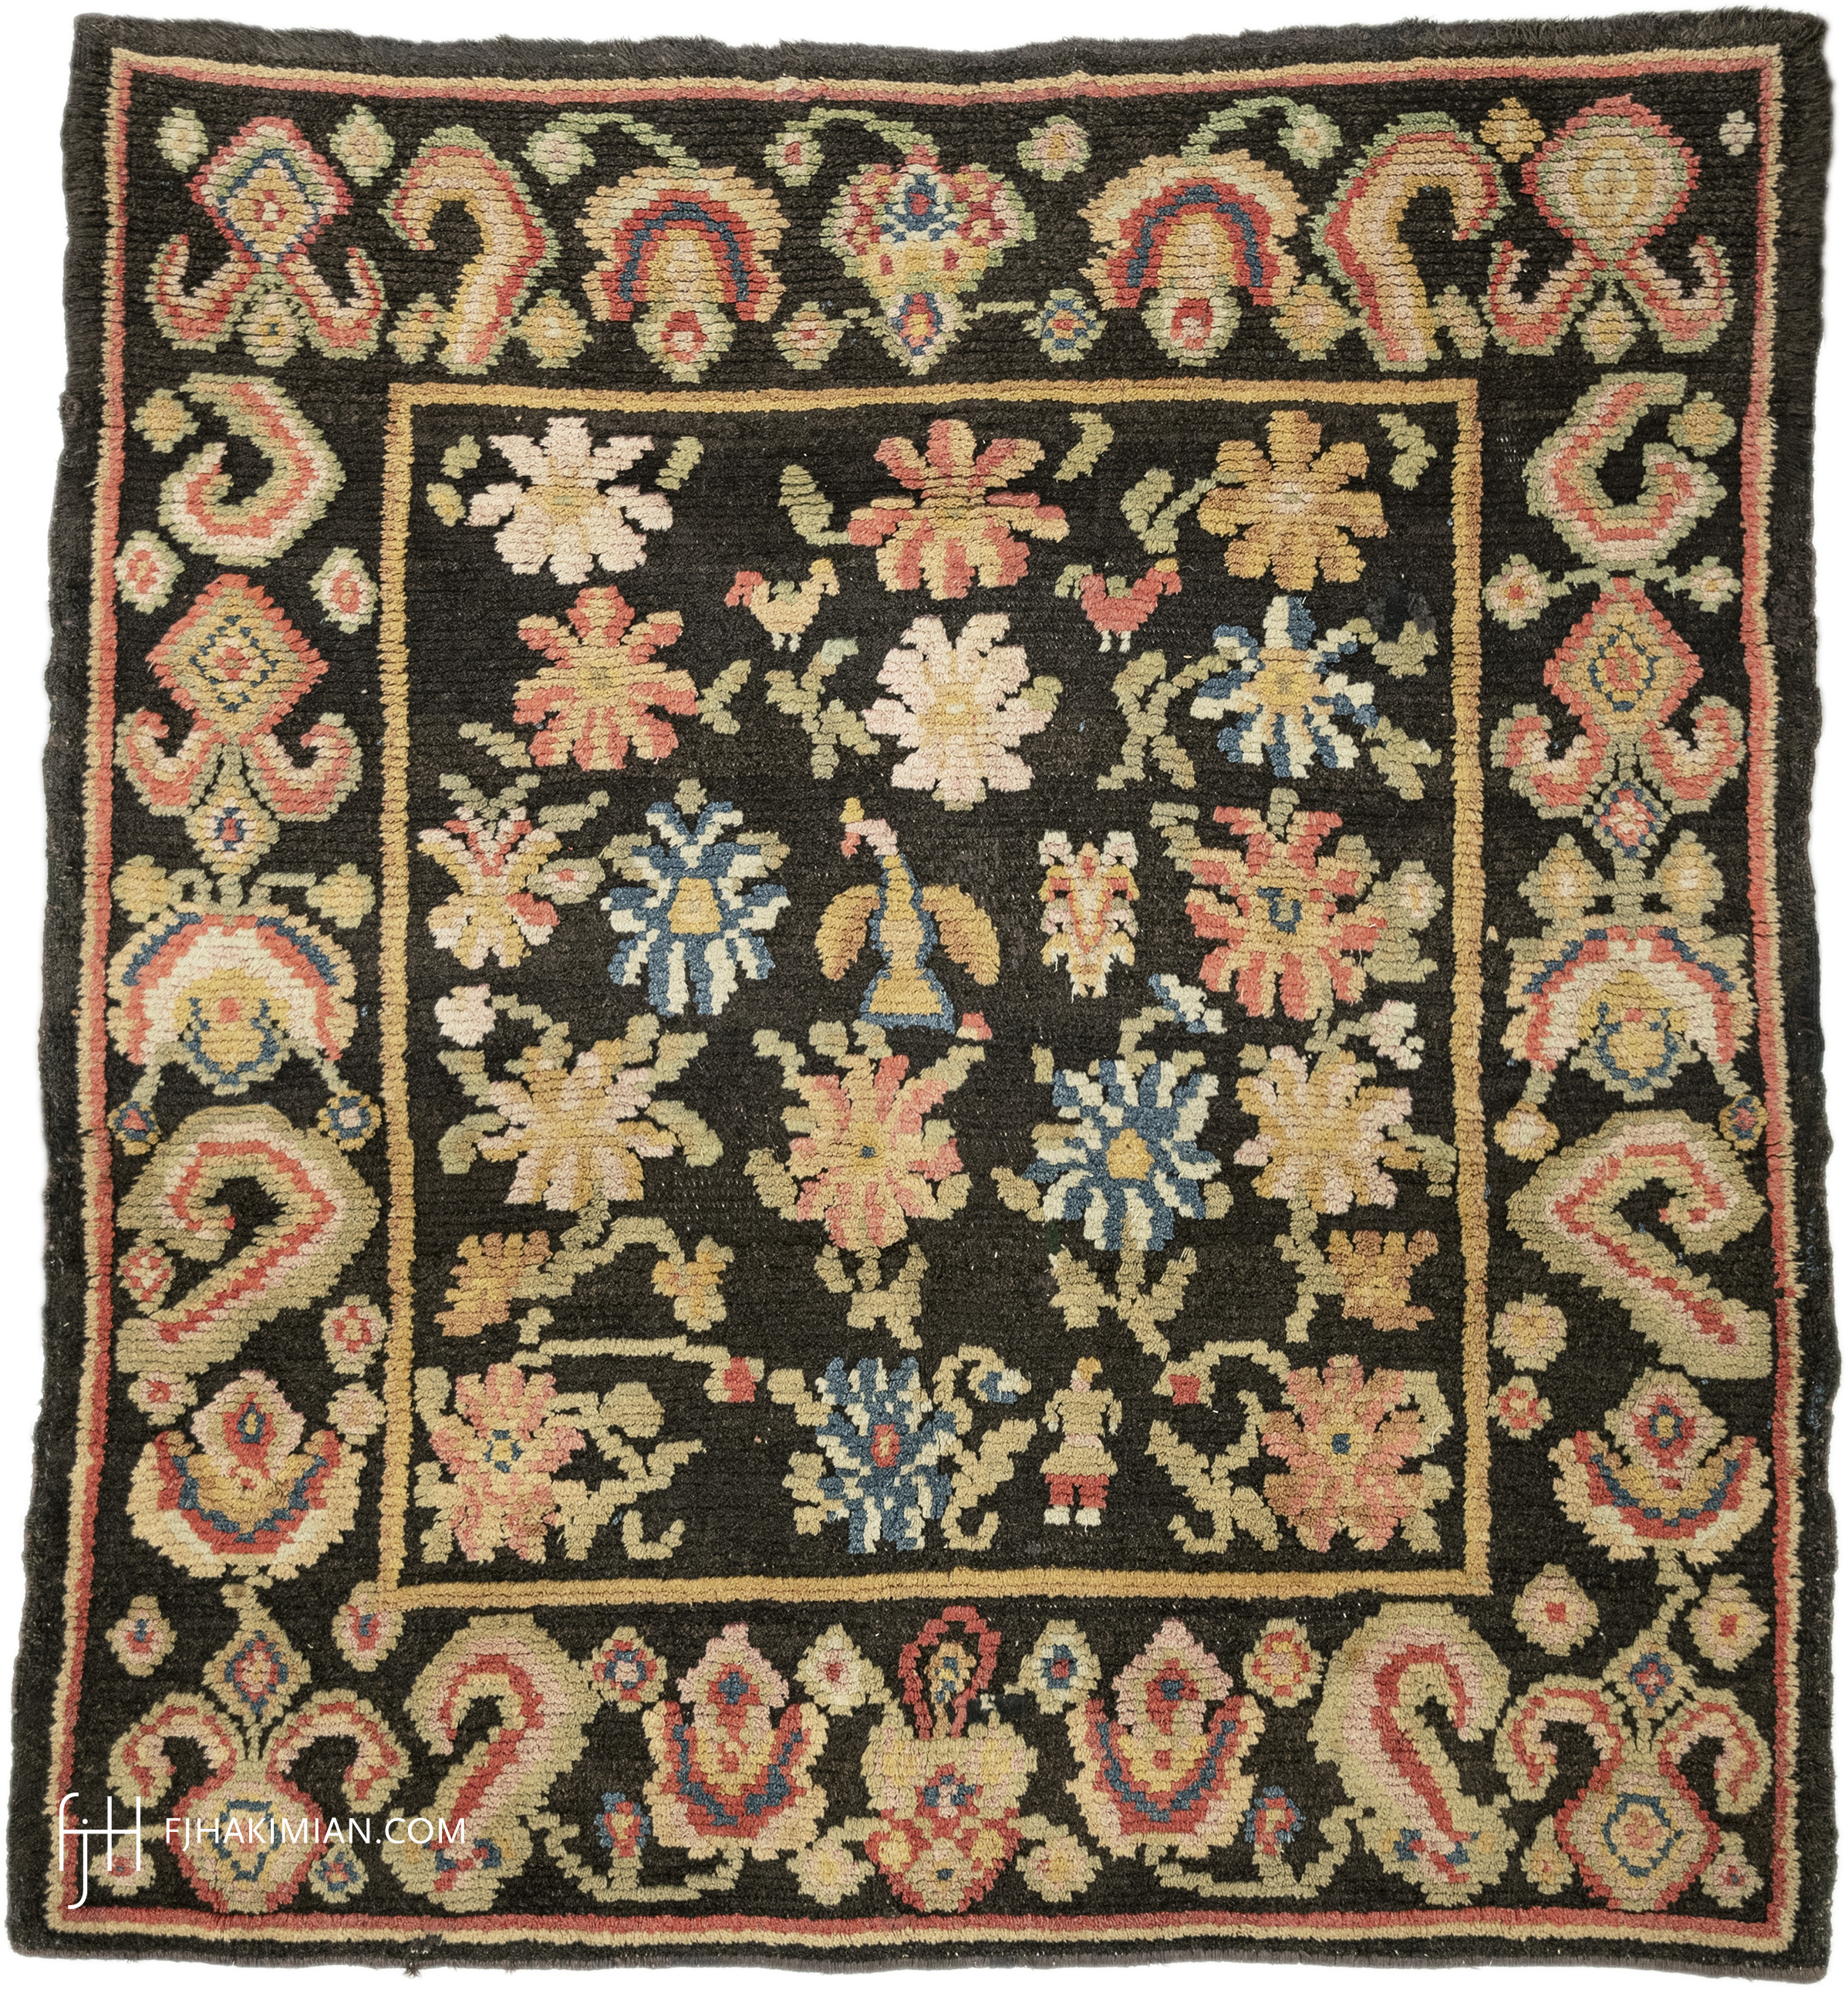 FJ Hakimian | 03012 | Vintage carpet